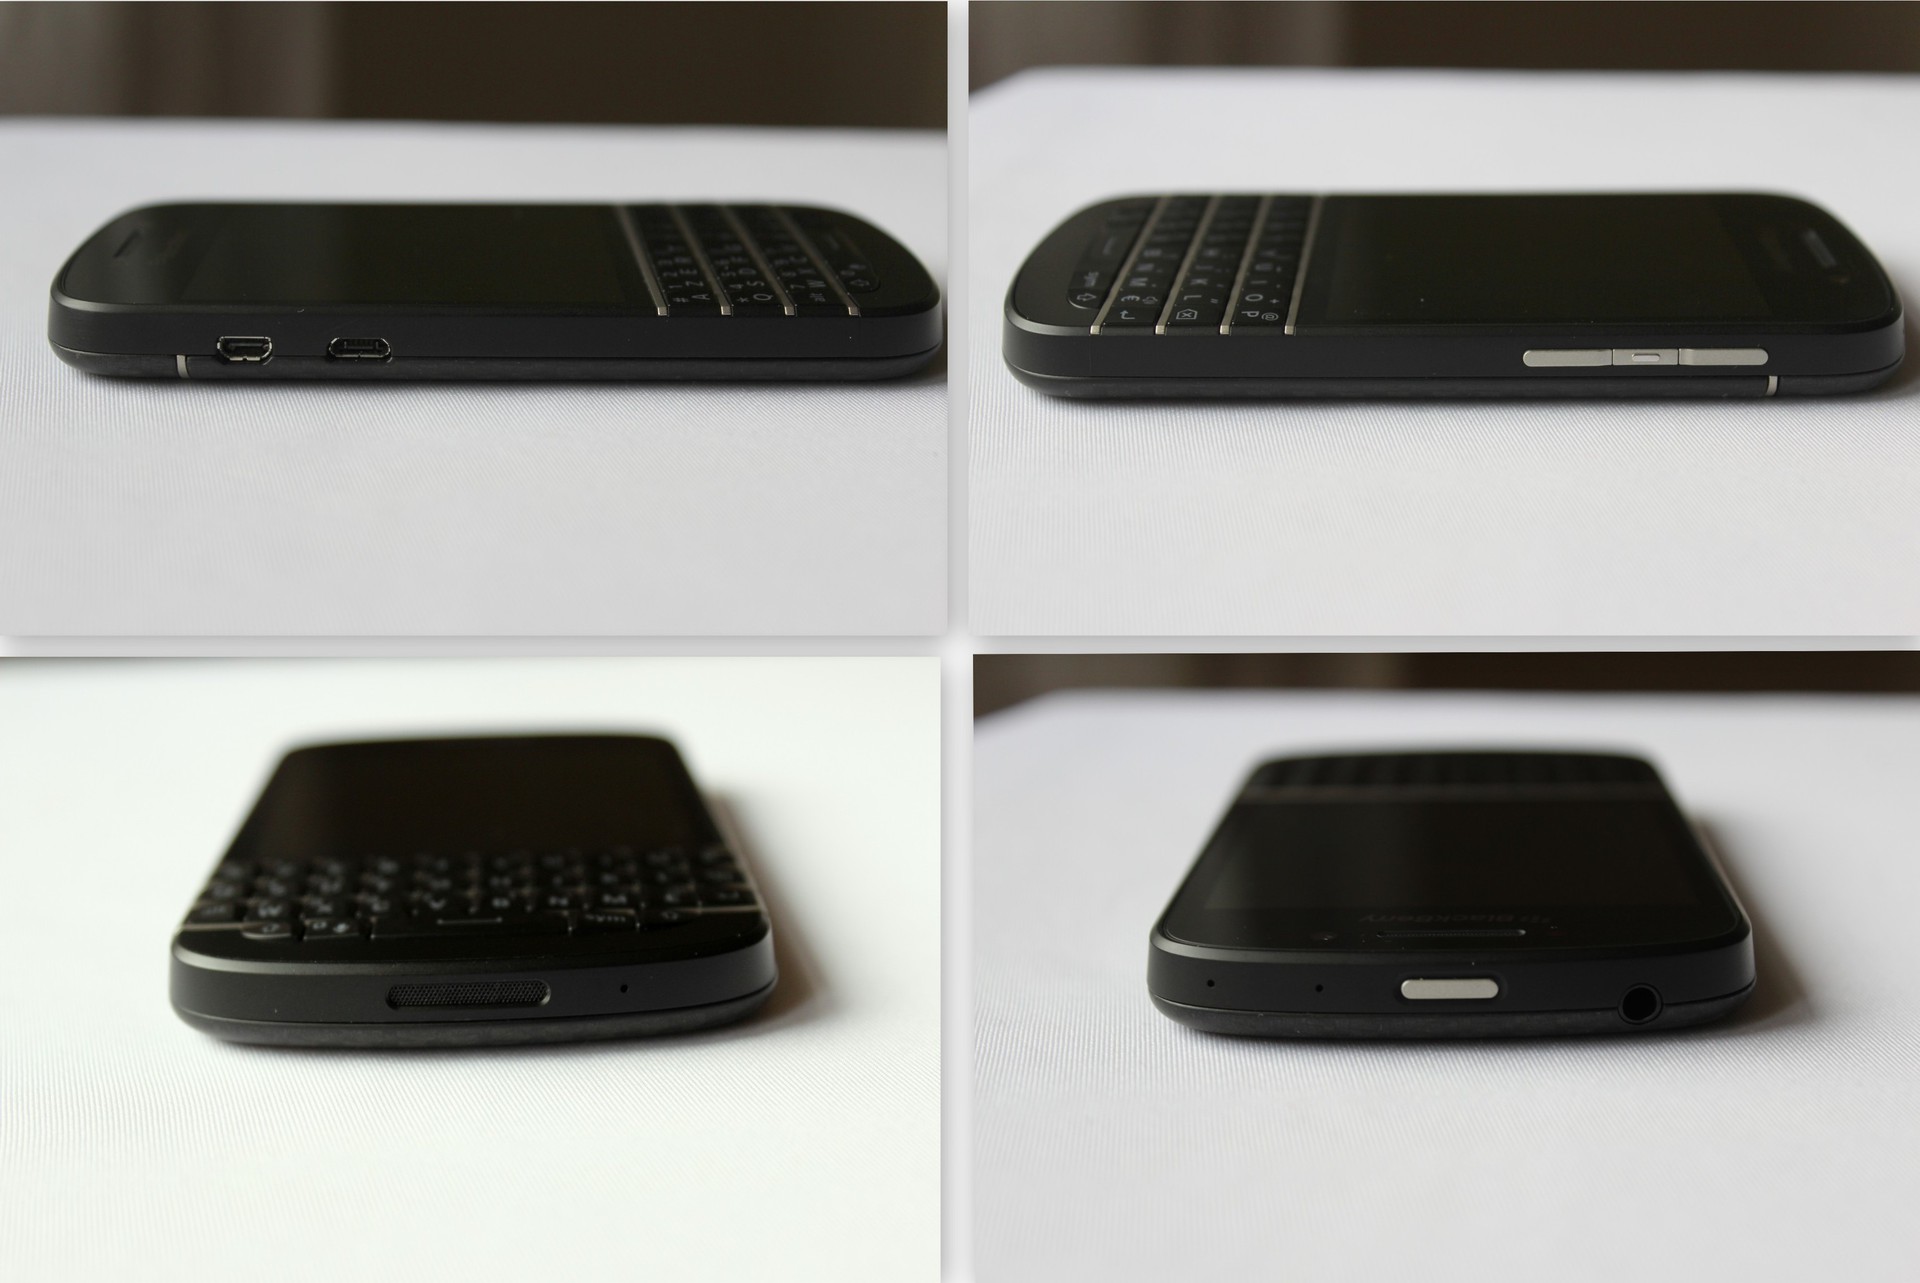 Обзор и впечатления от Blackberry Q10